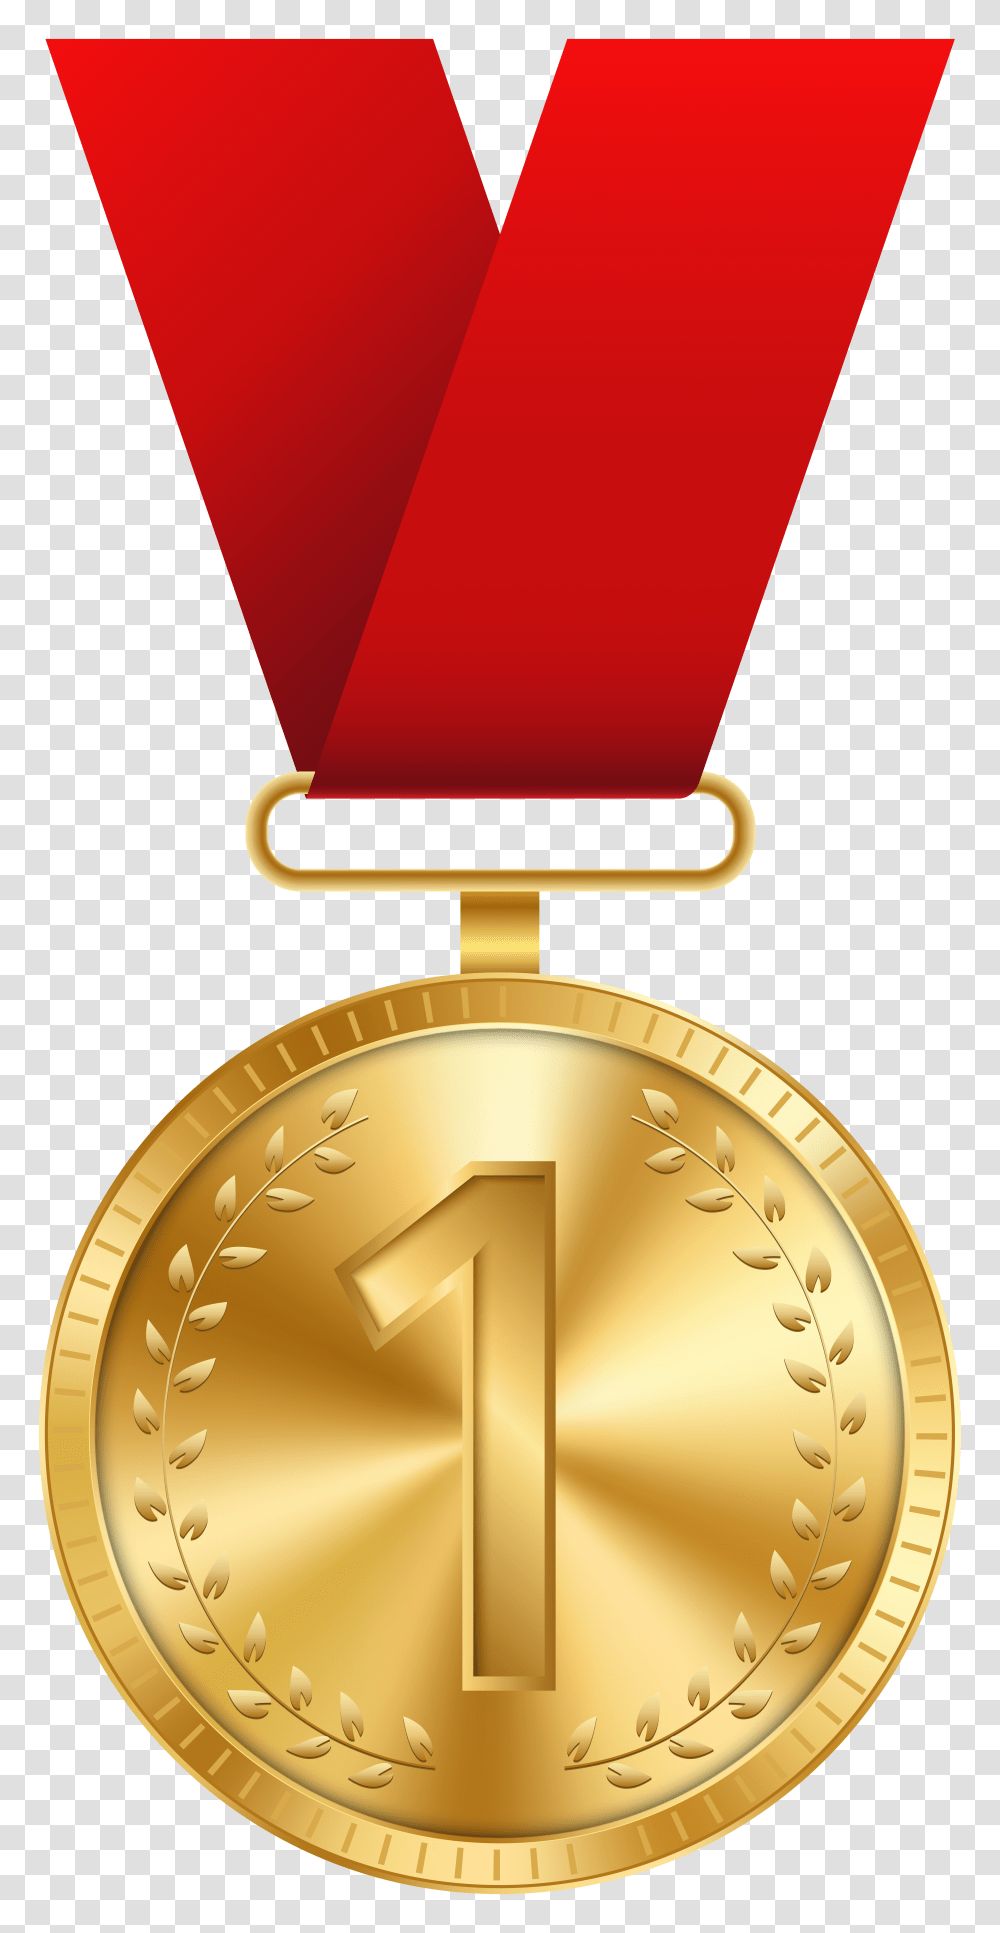 Free Medal Download Gold Medal Clipart, Lamp, Trophy Transparent Png